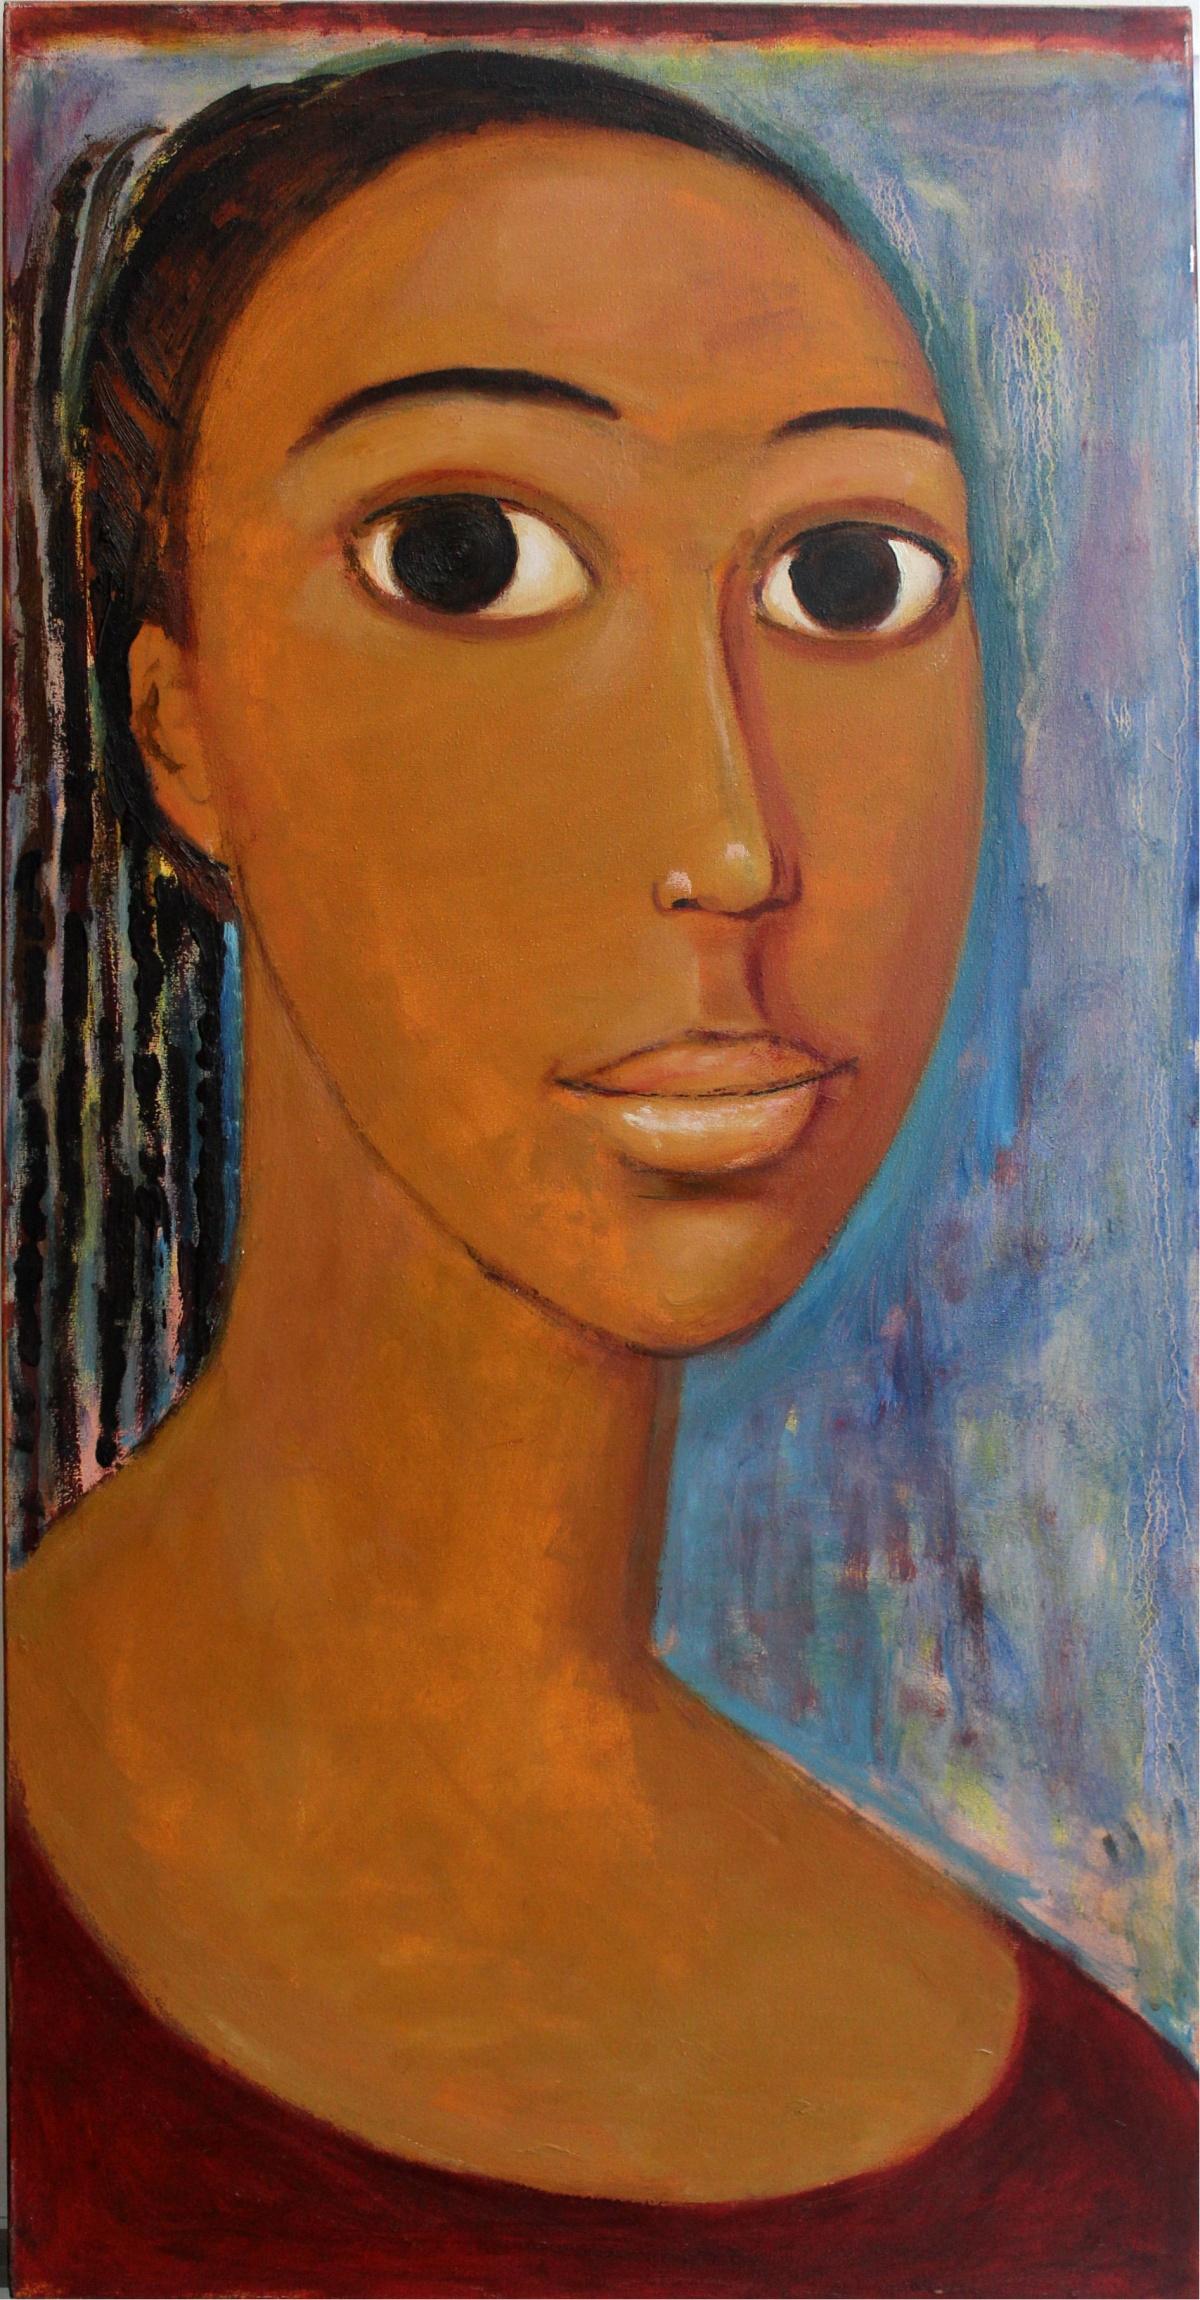 Portrait Painting Marlena Nizio - Portrait - XXIe siècle, peinture figurative à l'huile afro-américaine, 